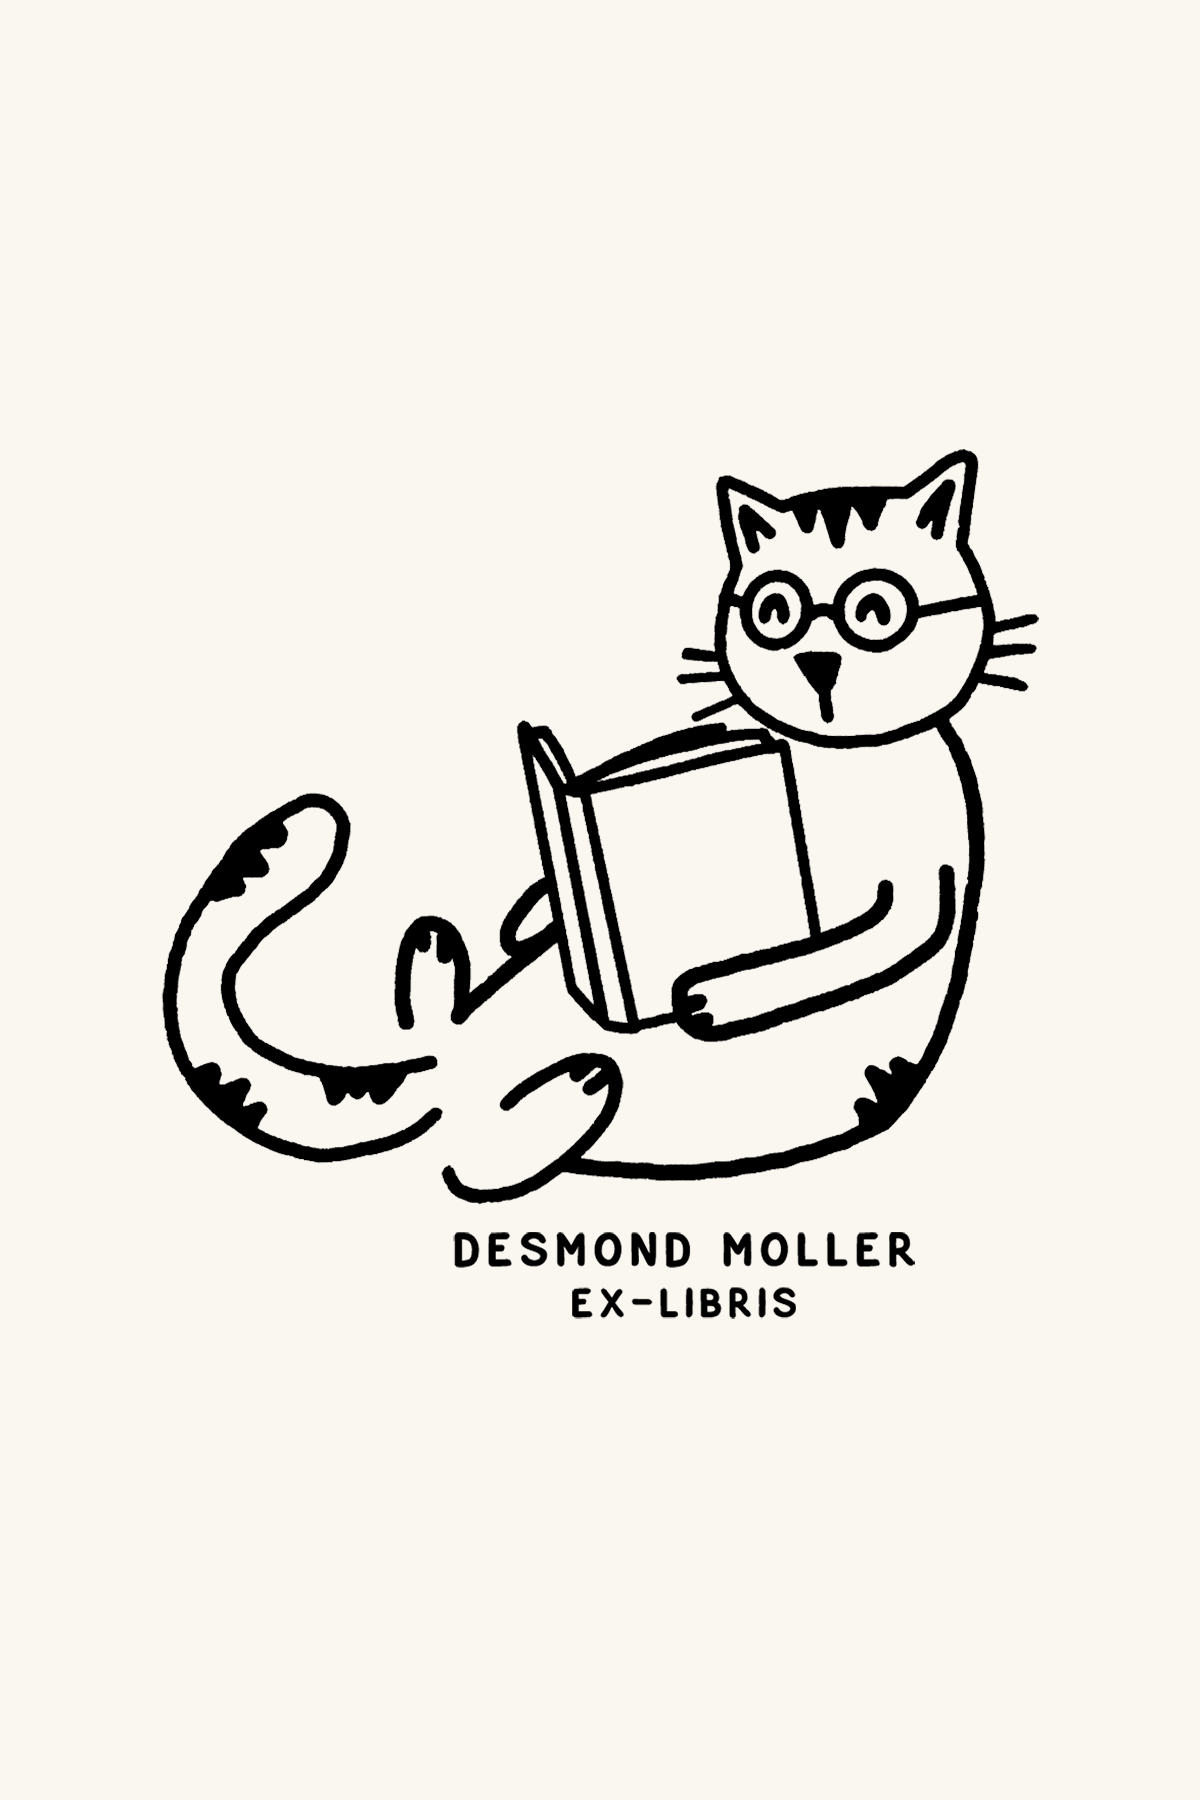 Dibujo de un gato con gafas tumbado leyendo un libro